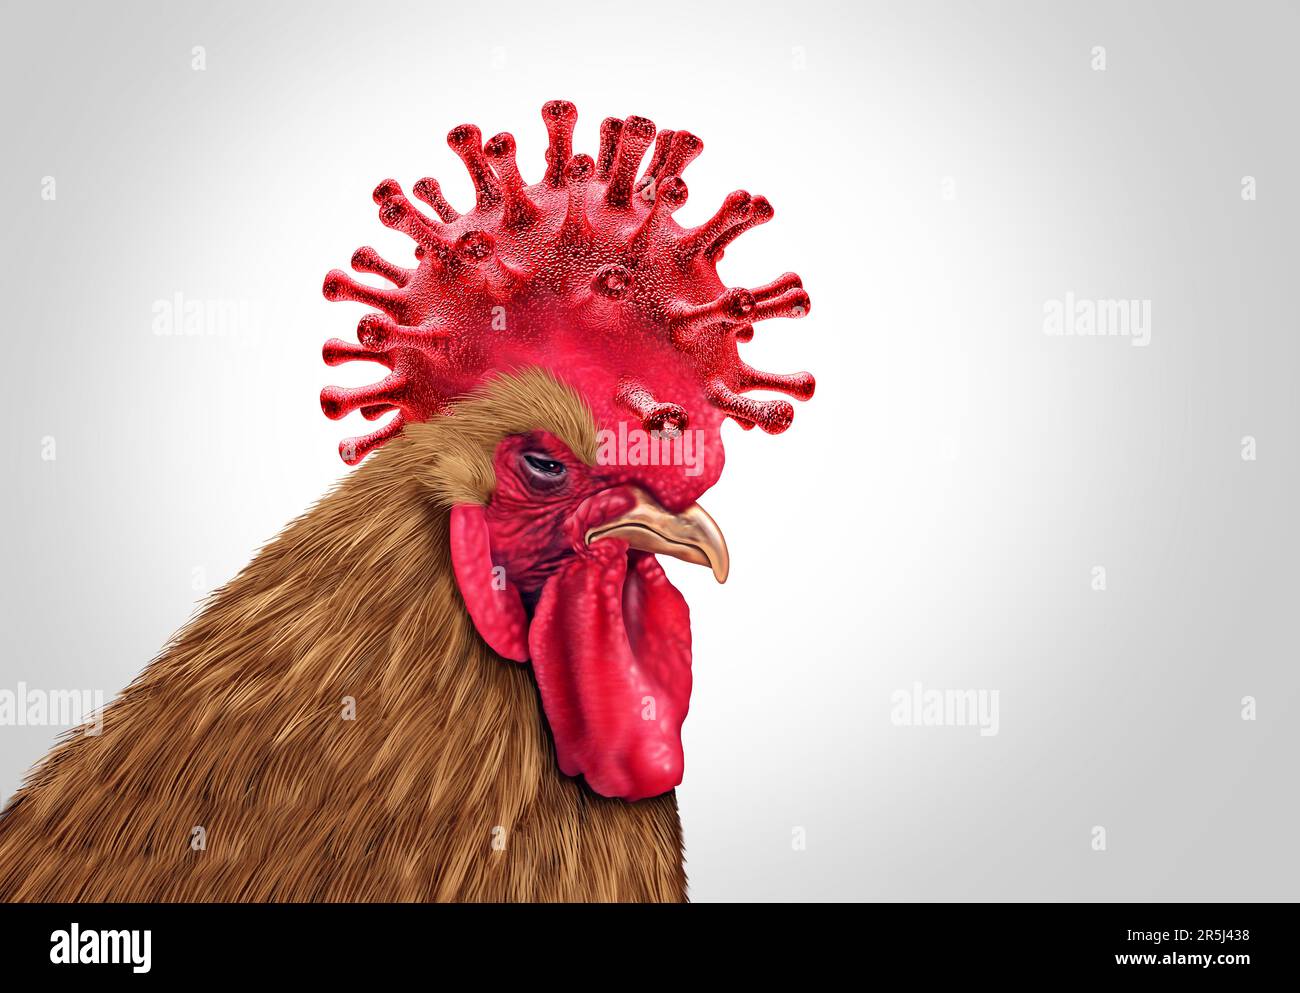 Vogelgrippeausbruch und Geflügelgrippekrise als Geflügelvirus, das als Hühnervieh infiziert ist, als Gesundheitsrisiko für weltweite Infektionsausbrüche Stockfoto